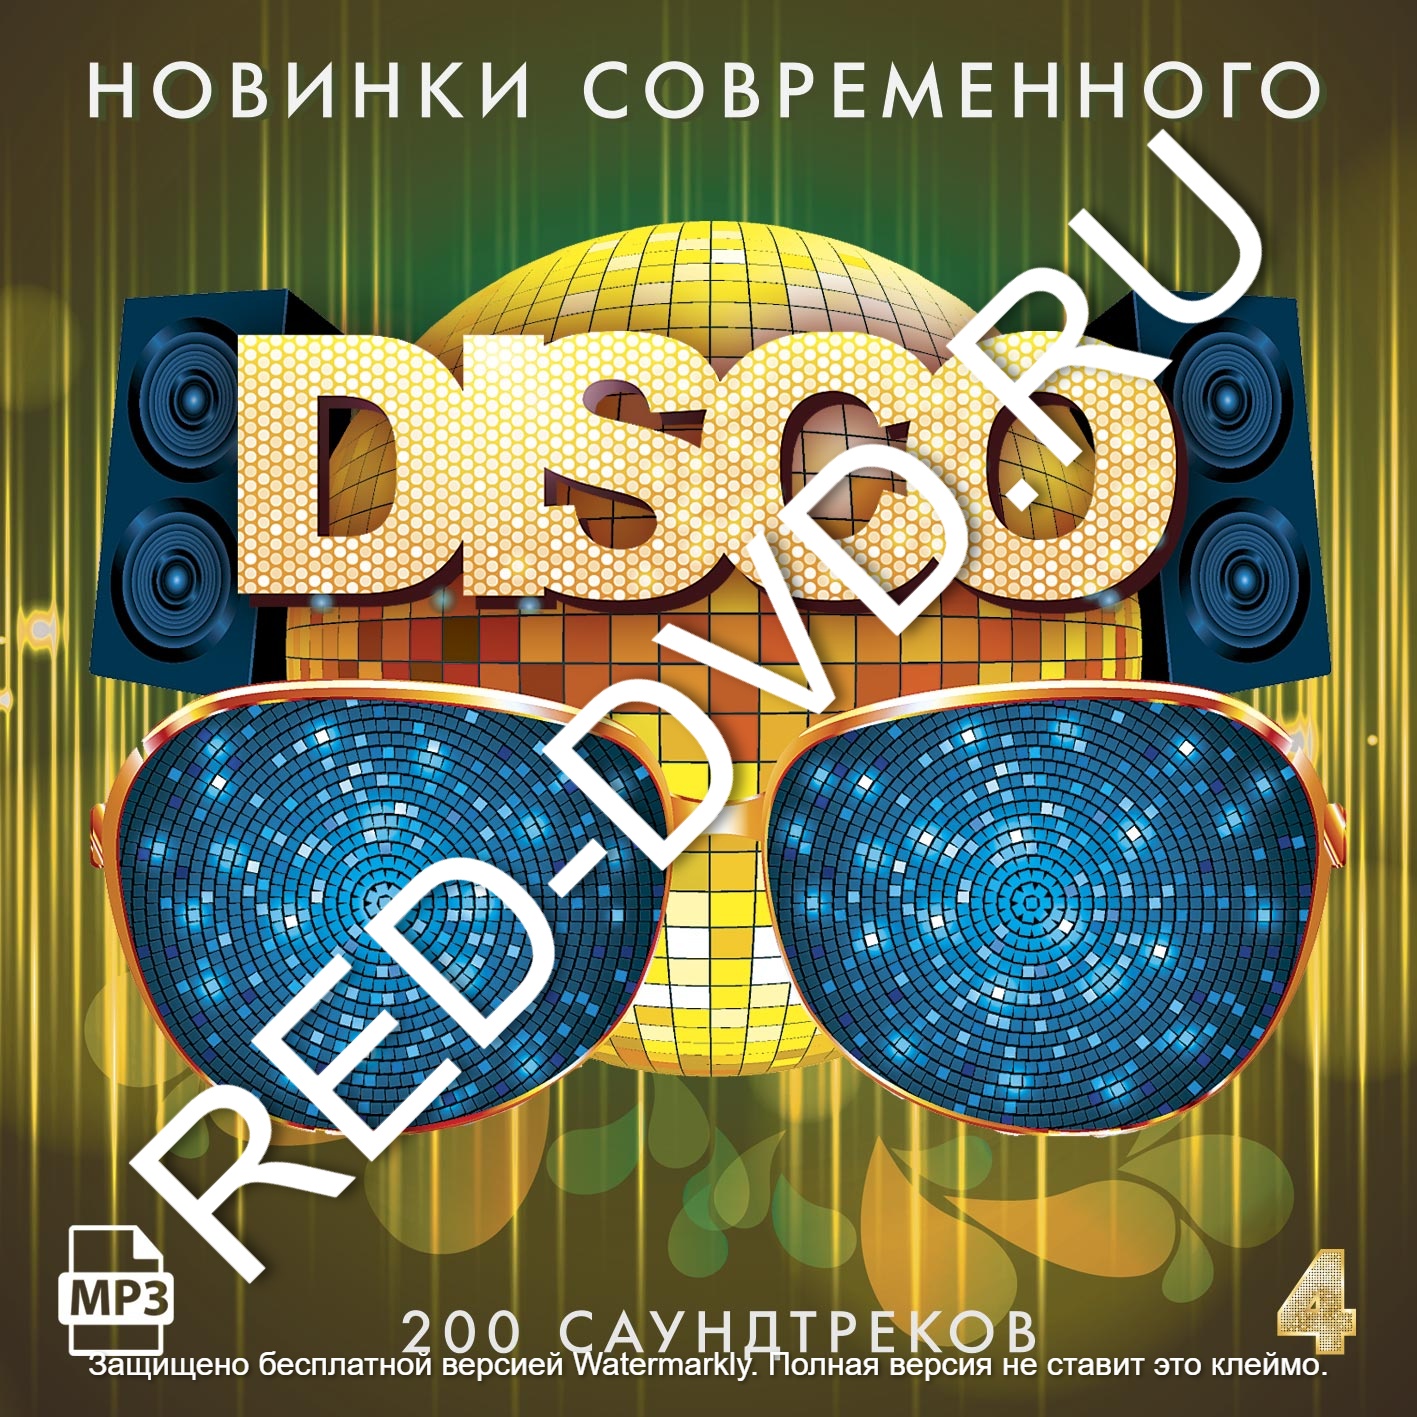 Интернет магазин Red-DVD